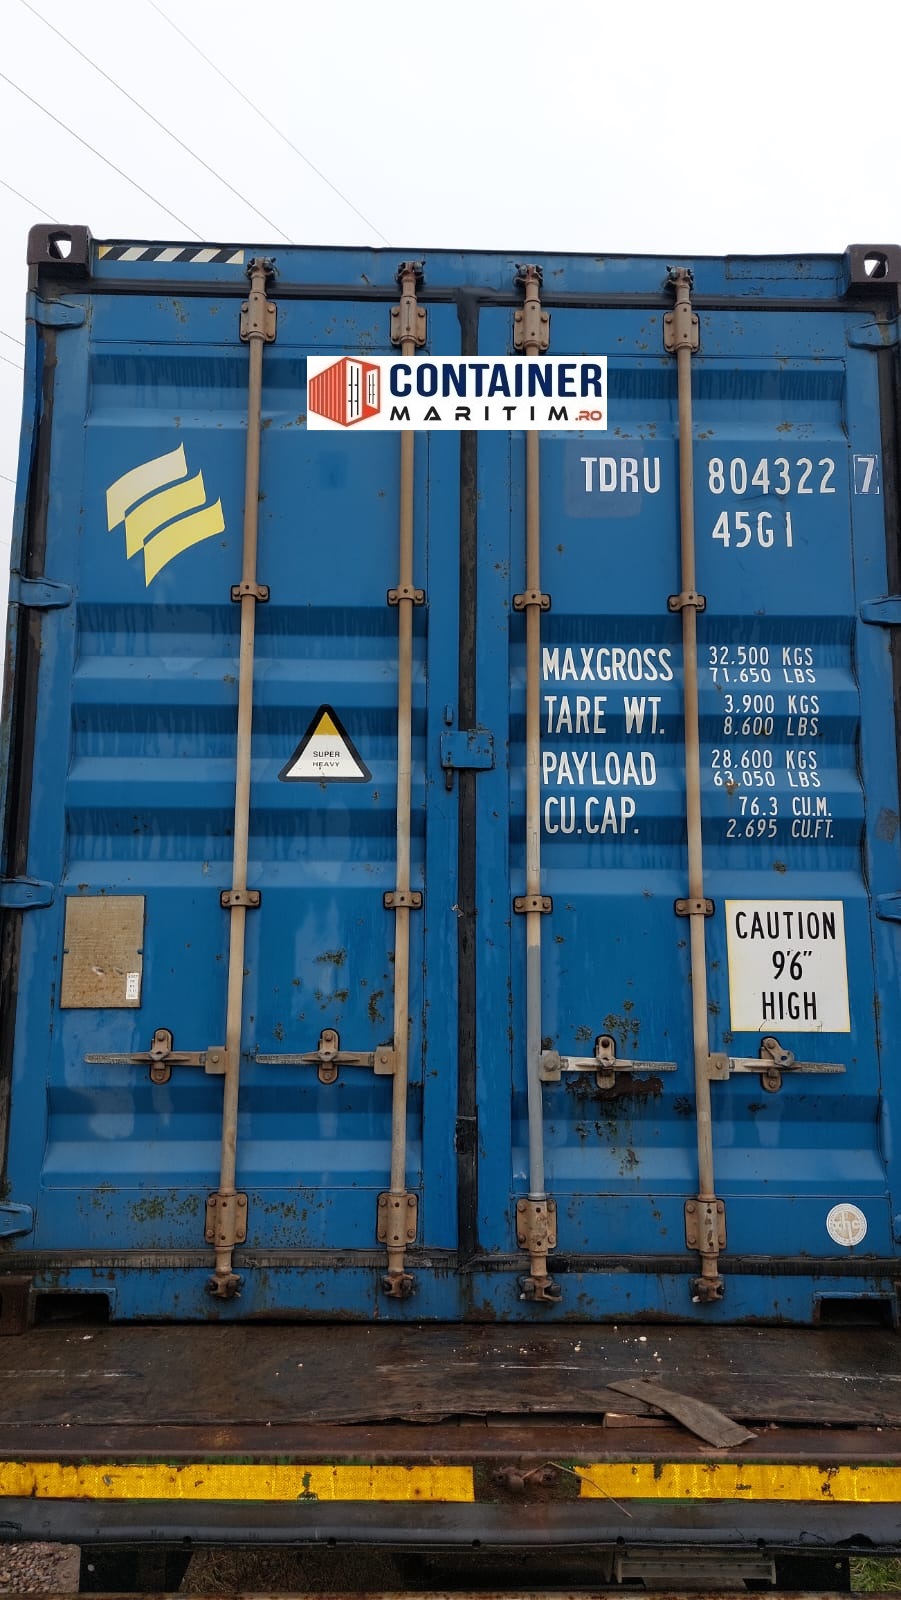 FOTO: Ce sunt containerele maritime și ContainerMaritim.ro, partenerul tău de 20 de ani din Bihor!, 09.01.2023